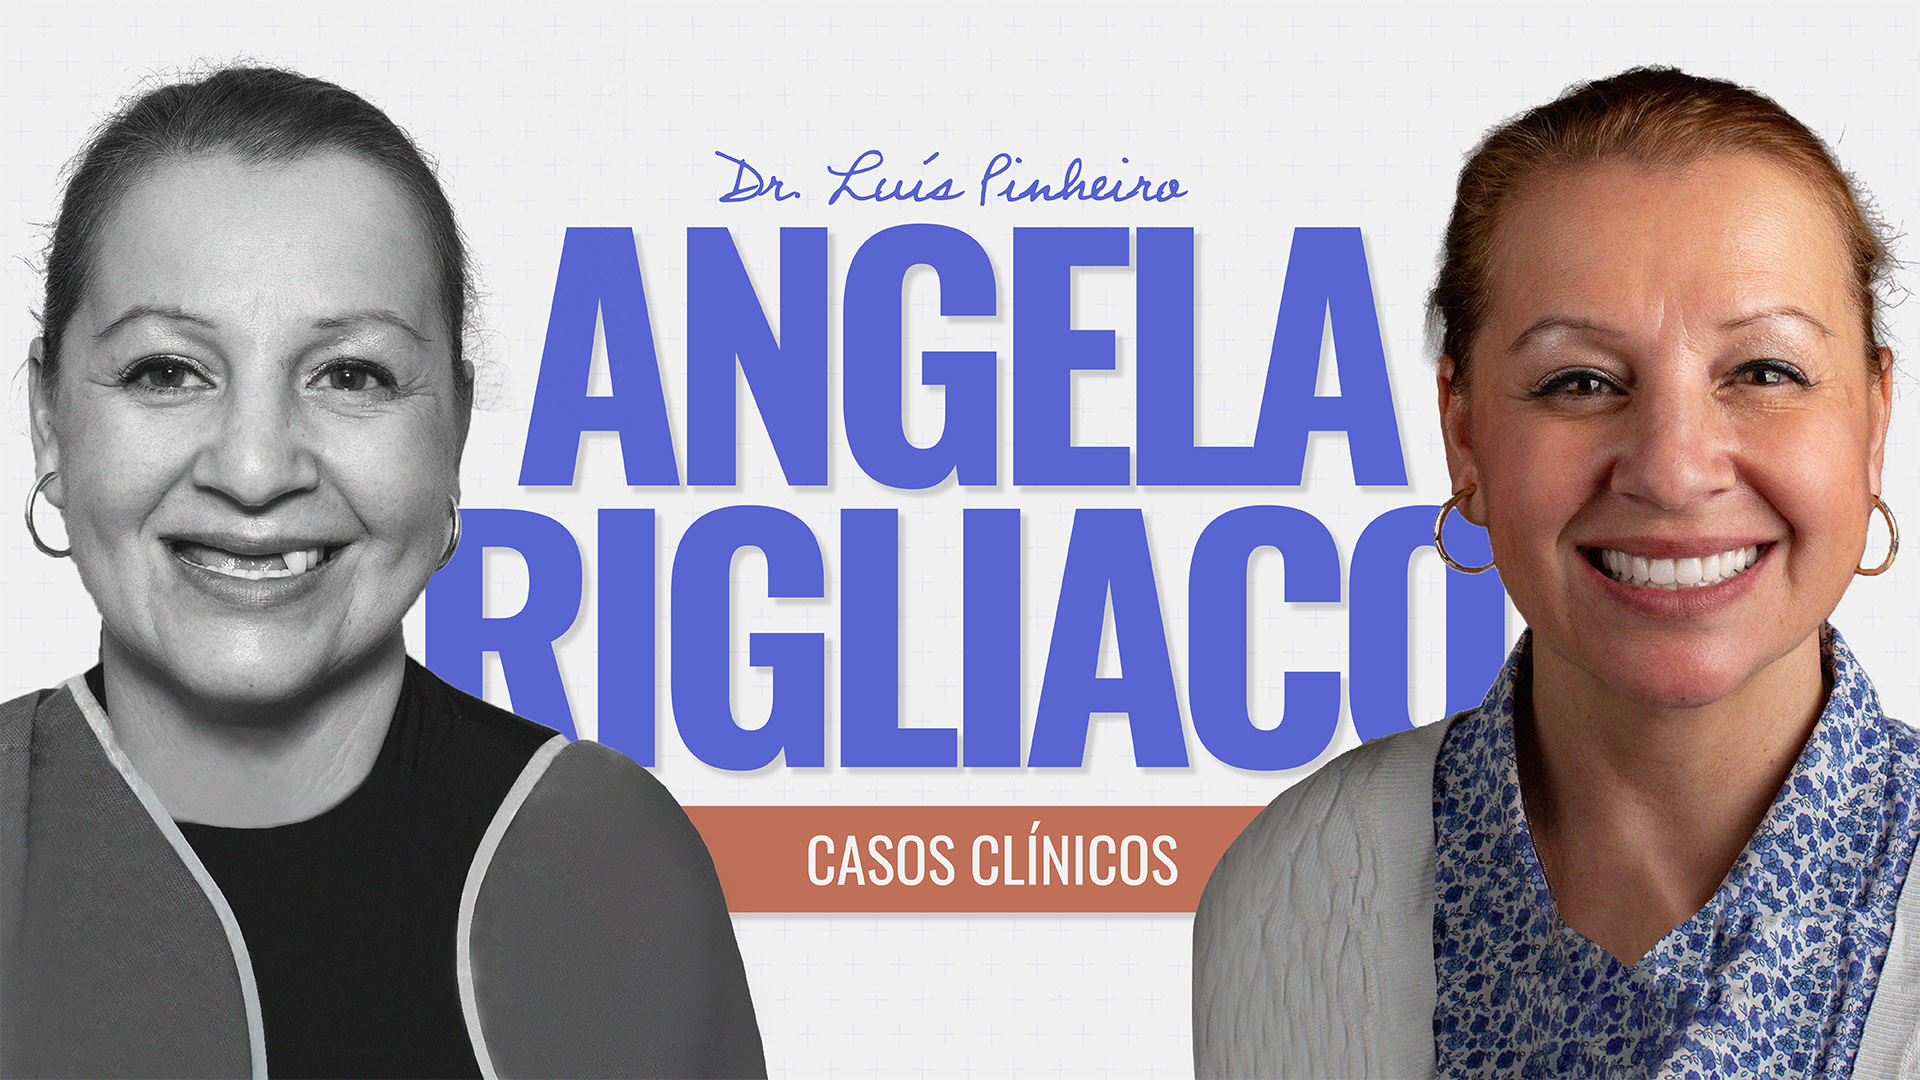 Caso clínico – Angela Rigliaco